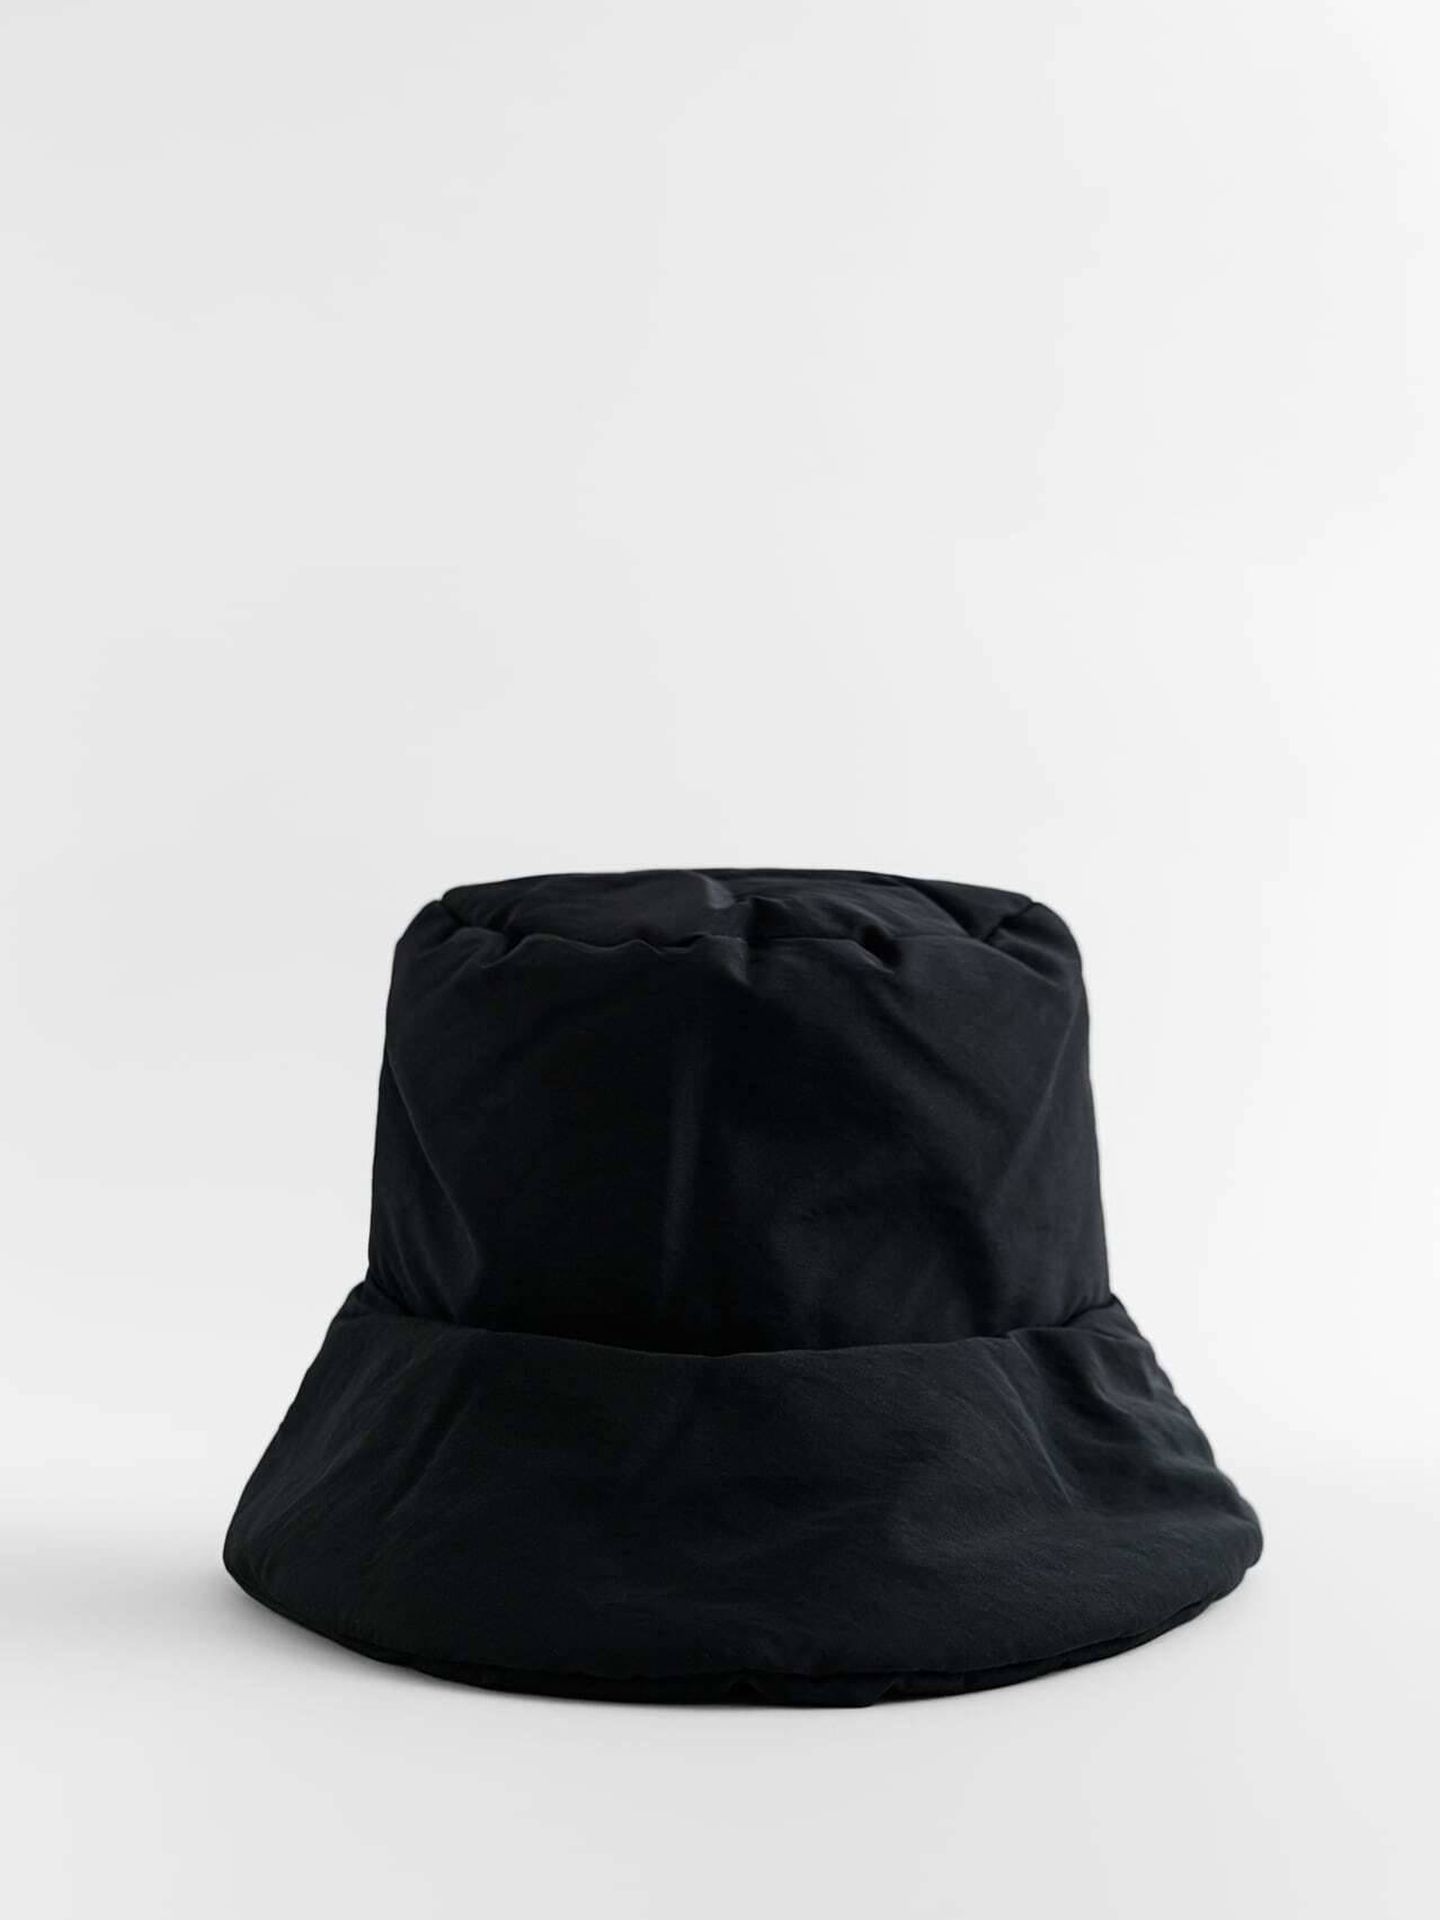 El nuevo bucket hat de Zara. (Cortesía)